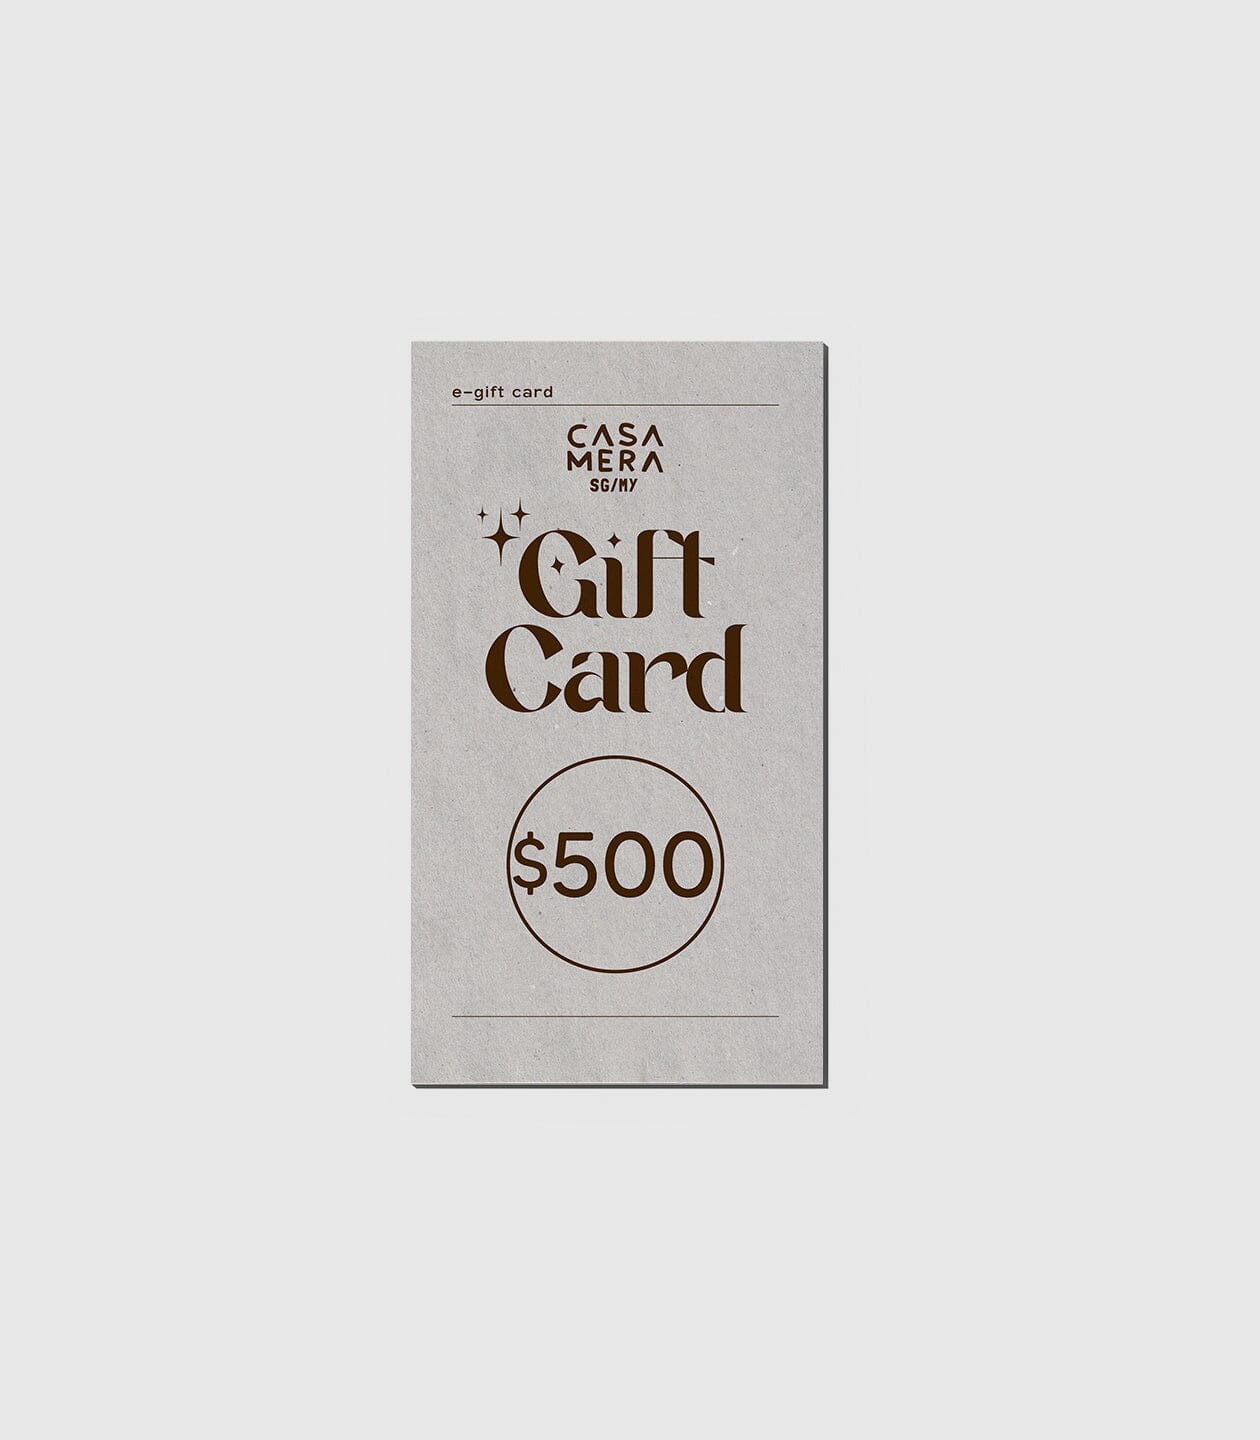 Gift Card casamerasg $500.00 